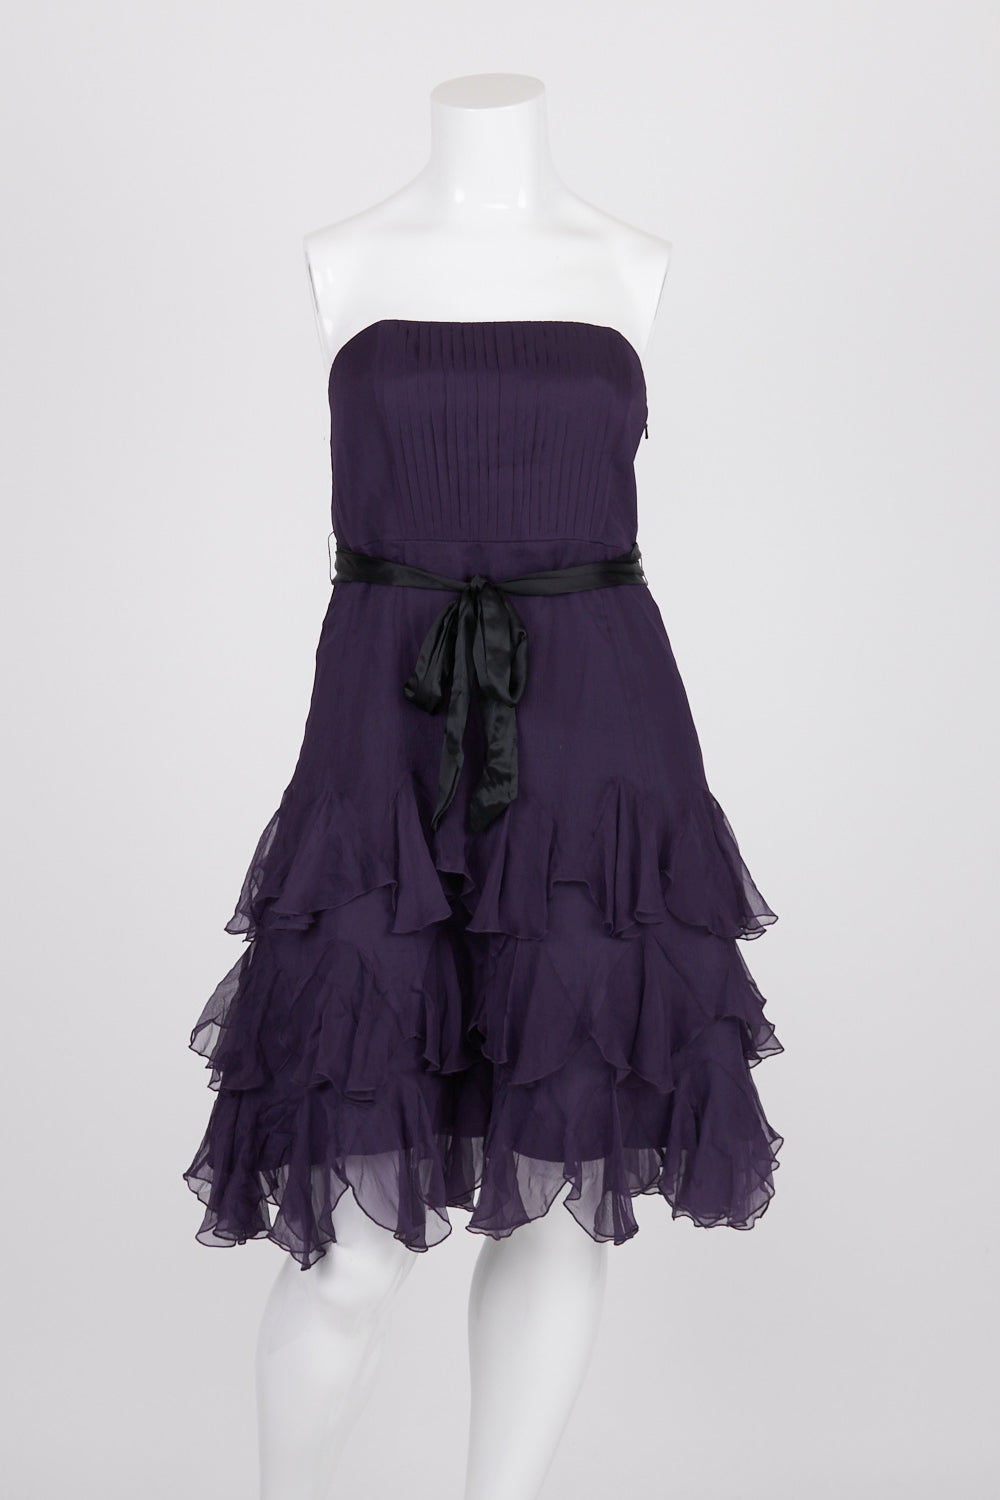 Monsoon Purple Layered 100% Silk Dress 16